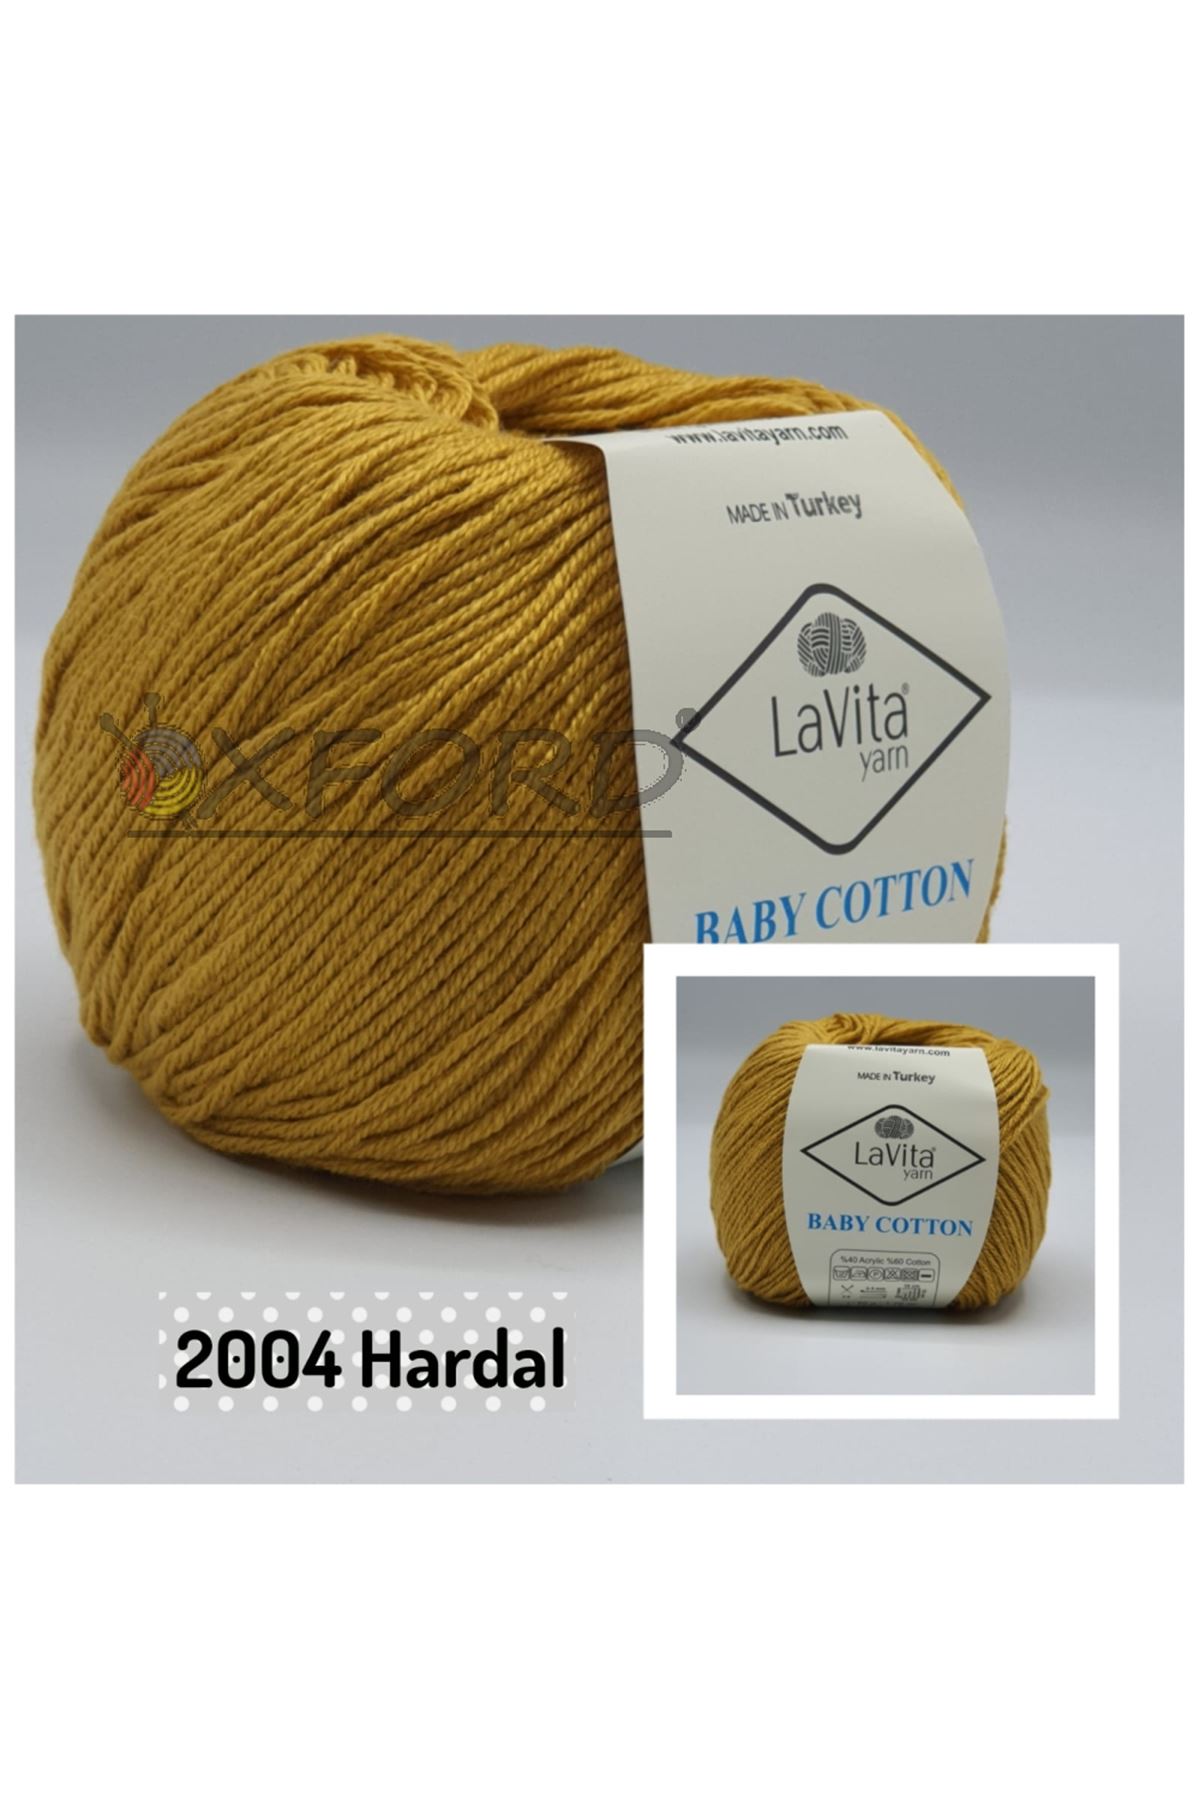 Lavita Baby Cotton 2004 Hardal